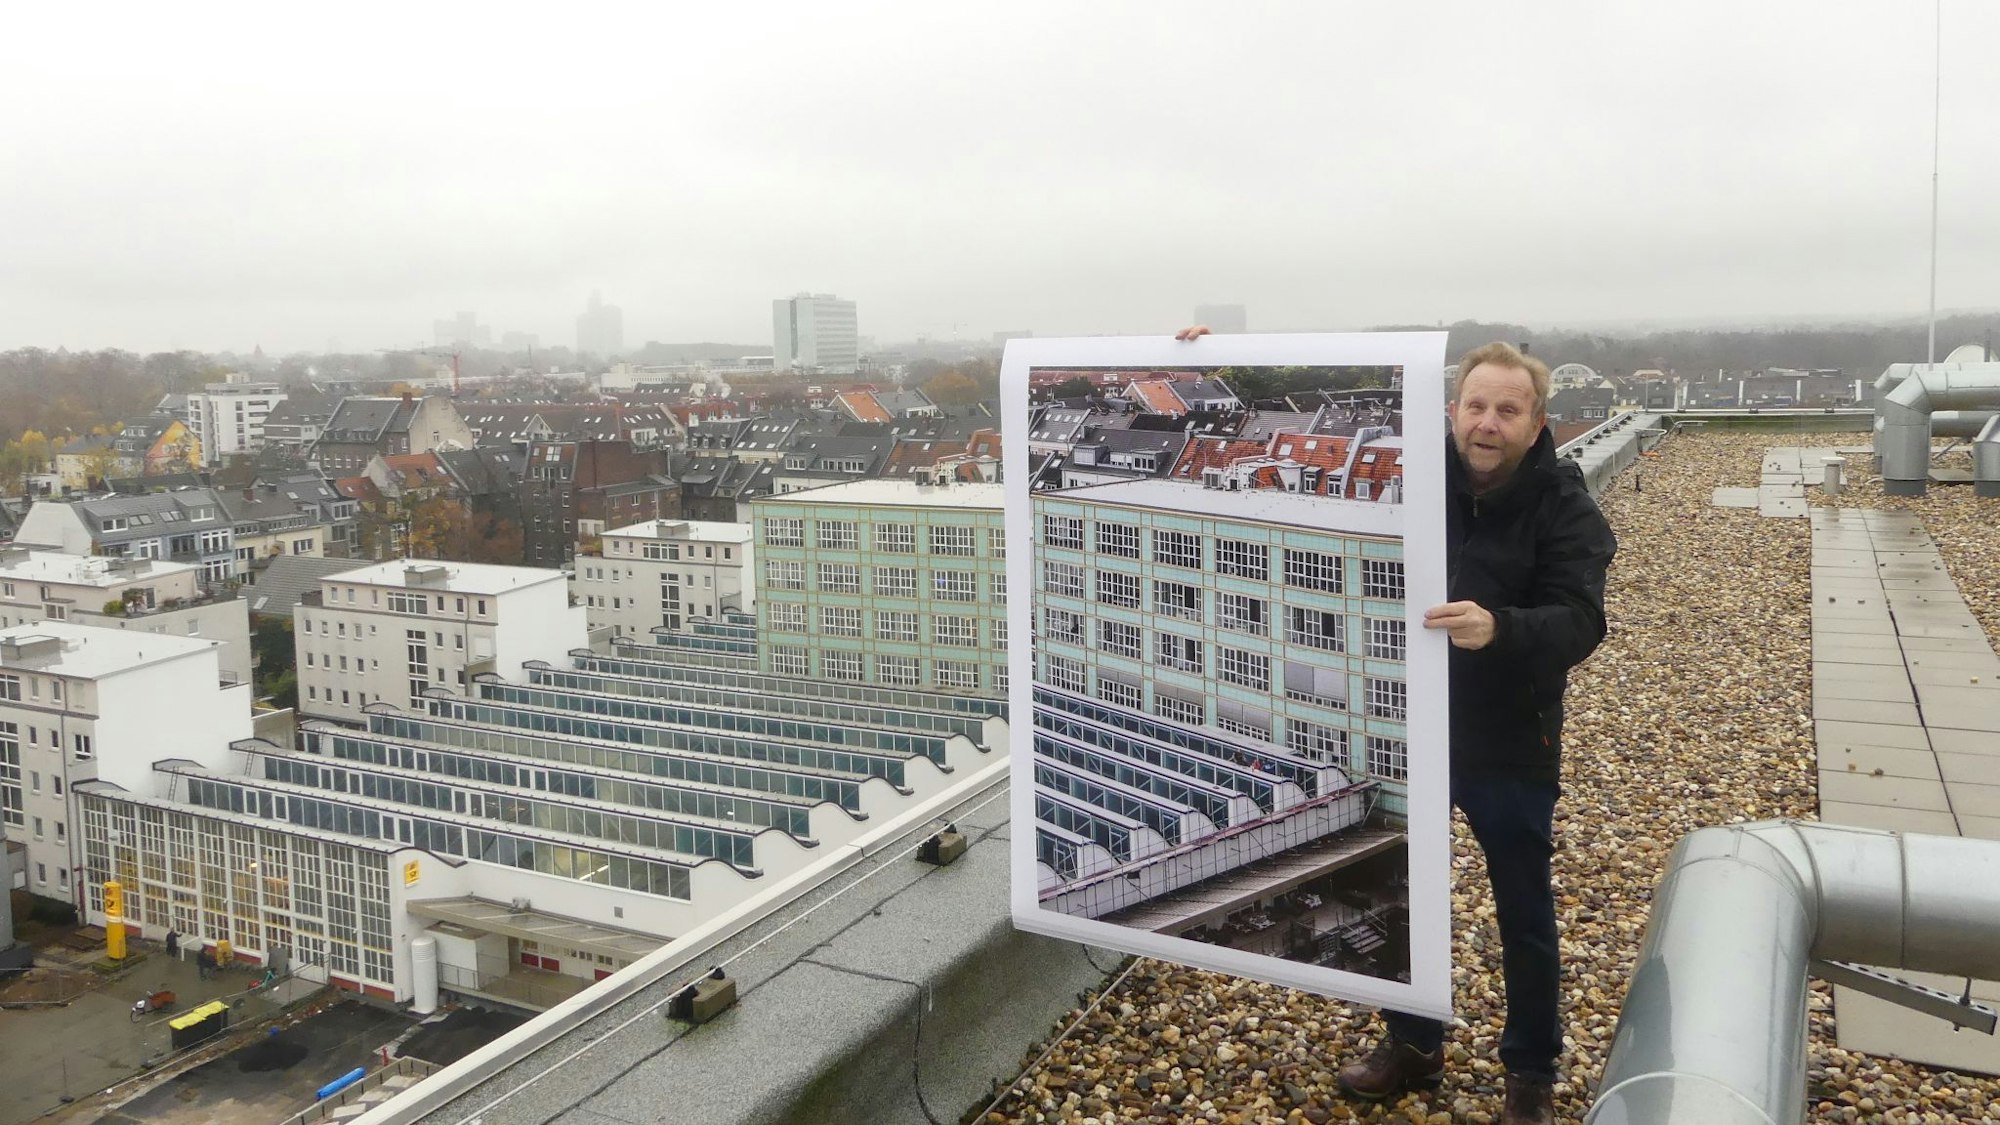 Fotograf Achim Bednorz auf dem 4711-Genäude in Ehrenfeld, während er eine seiner Fotografien in die Luft hält, die Stadt im Hintergrund.